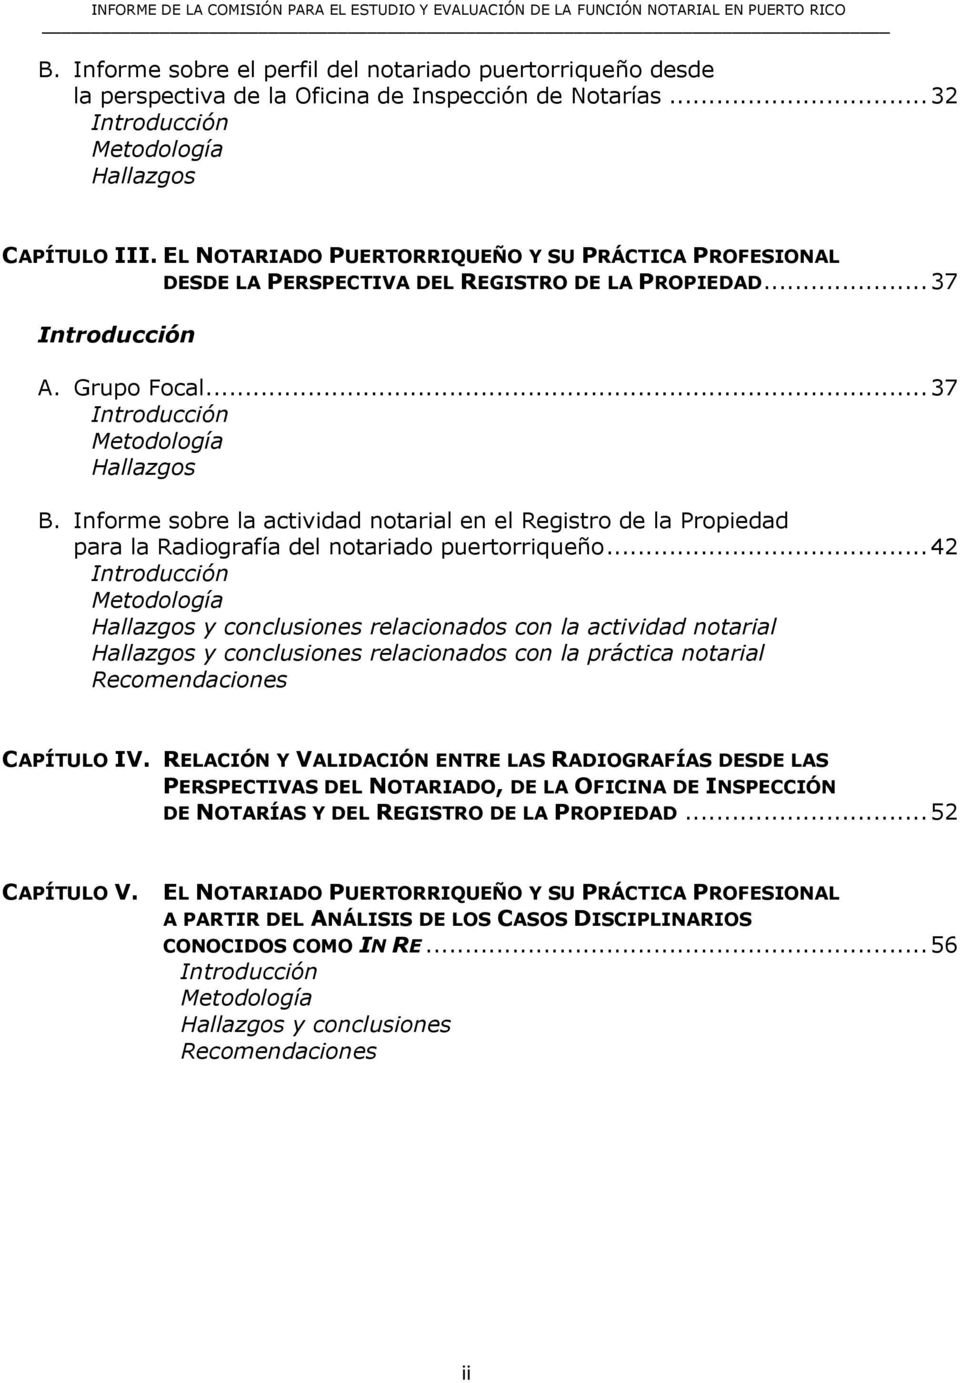 Informe sobre la actividad notarial en el Registro de la Propiedad para la Radiografía del notariado puertorriqueño.